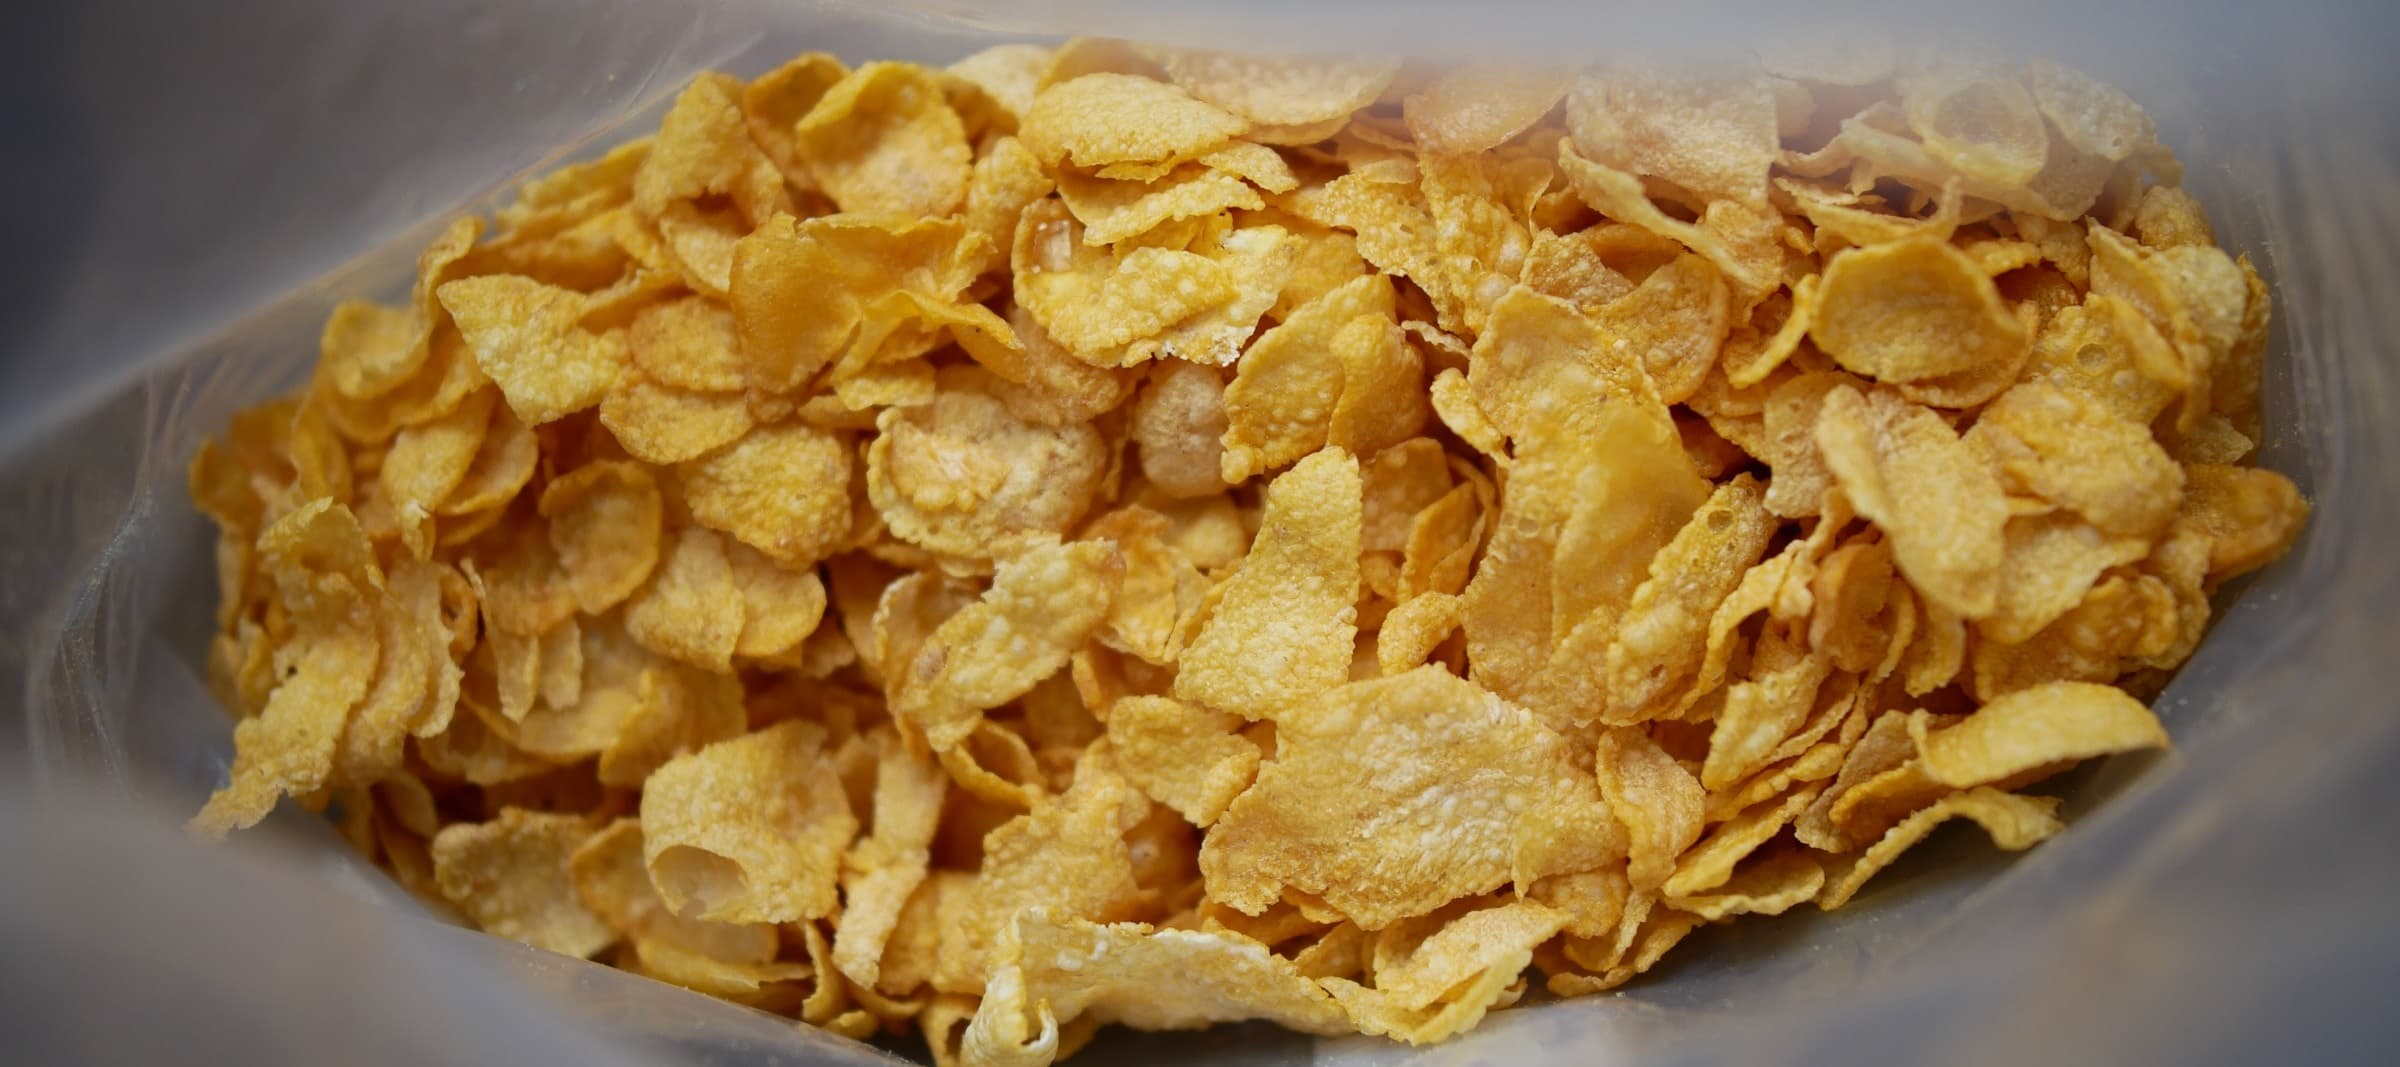 Фото новости: "«Черноголовка» может купить российские активы производителя чипсов Pringles и готовых завтраков «Любятово»"